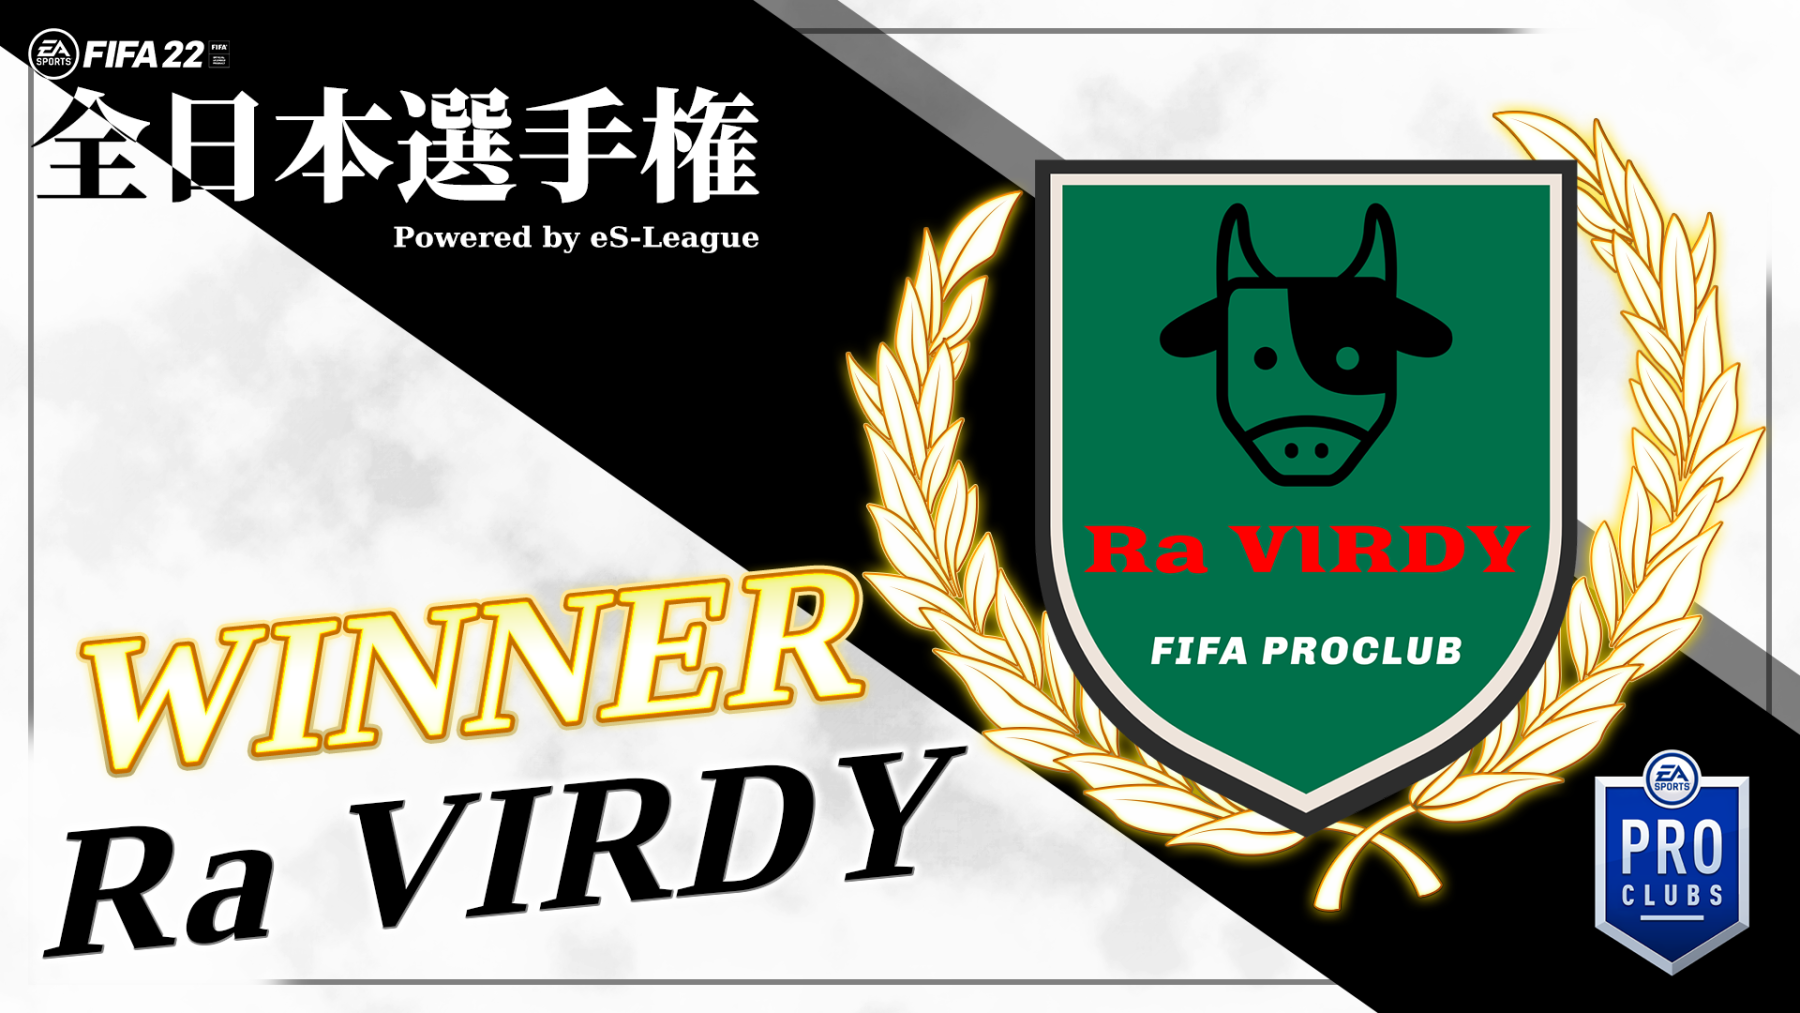 11人制 Fifa 22 全日本選手権を制したのは 優勝クラブra Virdyキャプテンkai選手インタビュー 組織力と戦術での優位性で勝負した 22年10月3日 エキサイトニュース